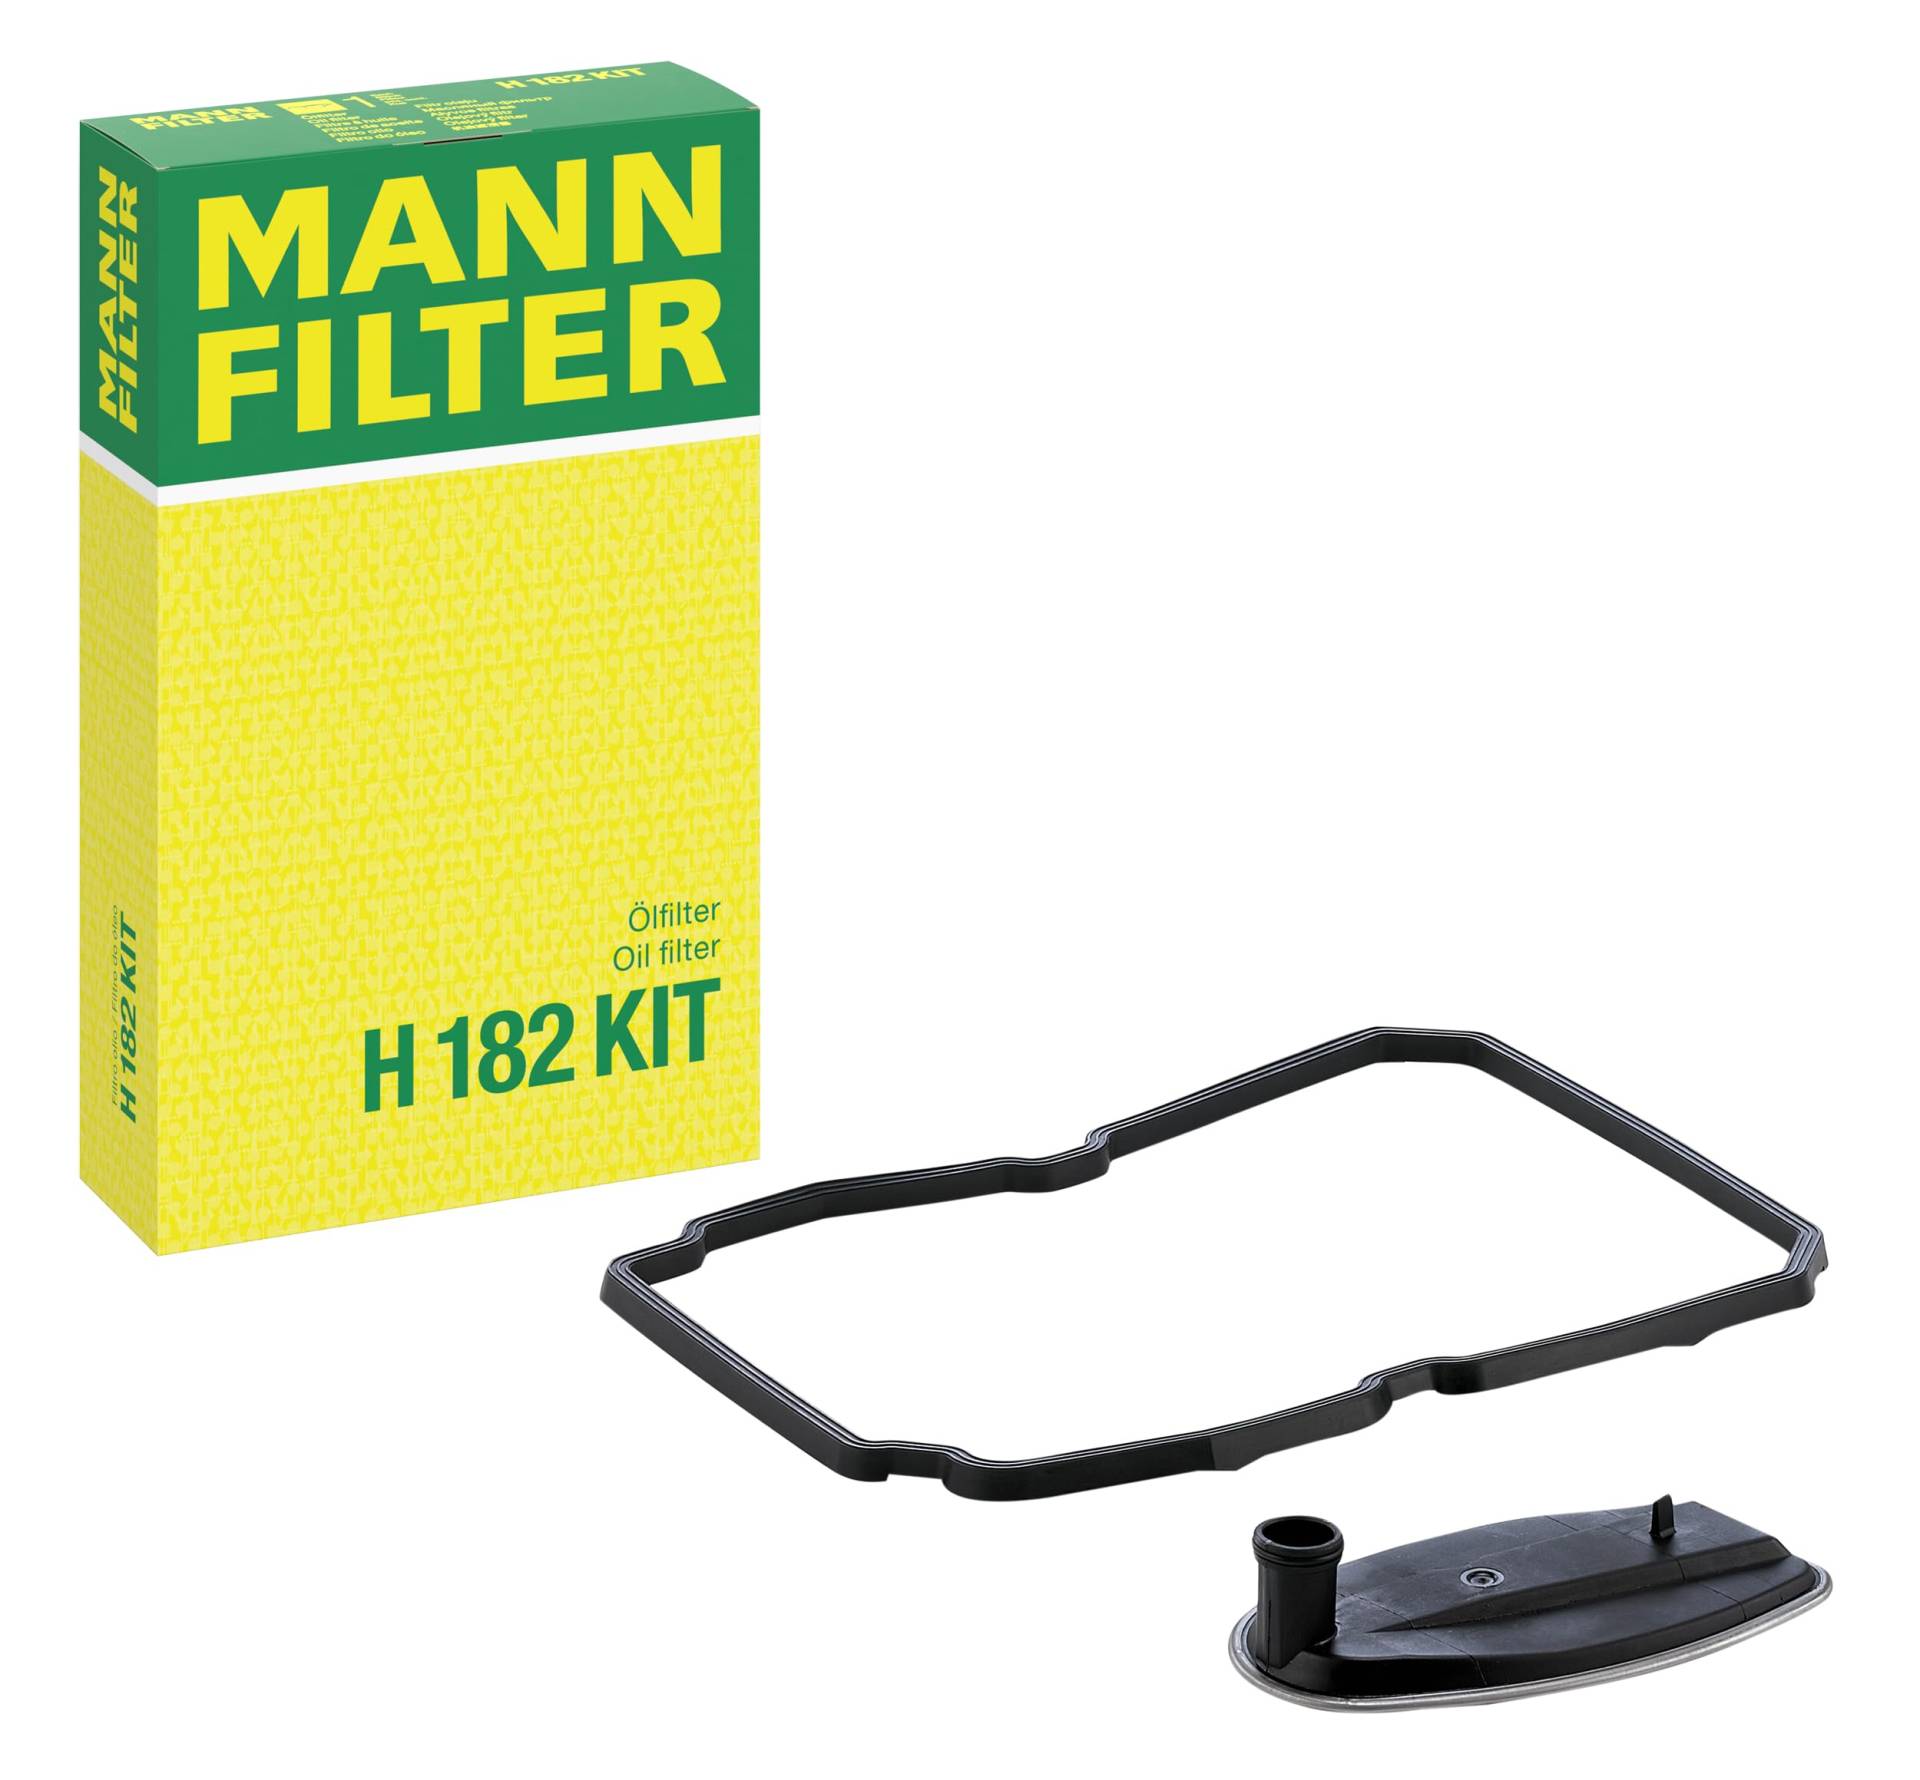 MANN-FILTER für Automatikgetriebe H 182 KIT Ölfilter – Getriebefilter mit Ölwannendichtung – Für PKW und Busse von MANN-FILTER